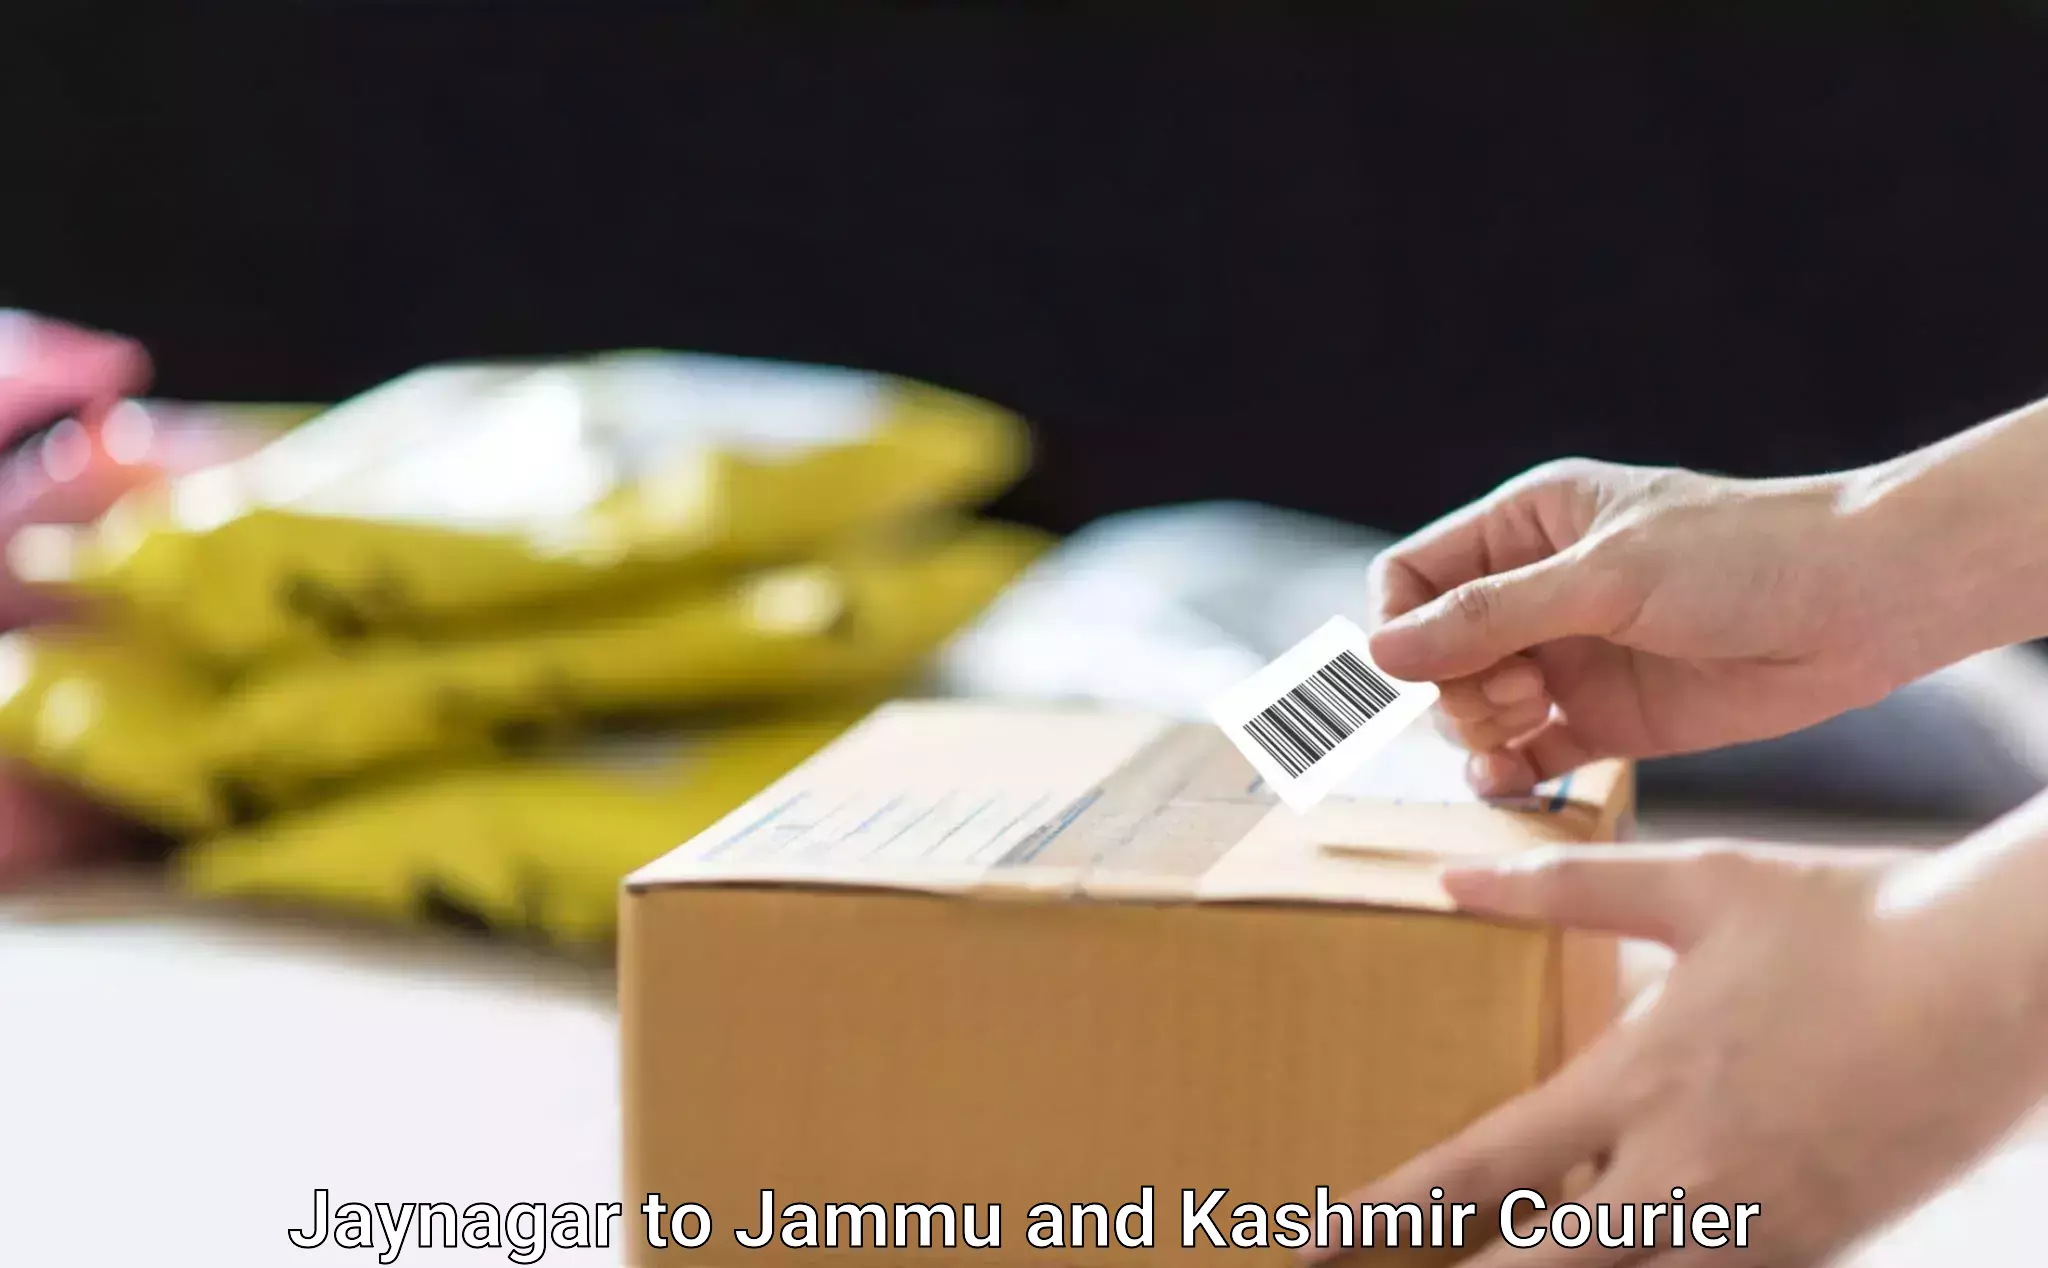 Furniture moving plans in Jaynagar to Jammu and Kashmir